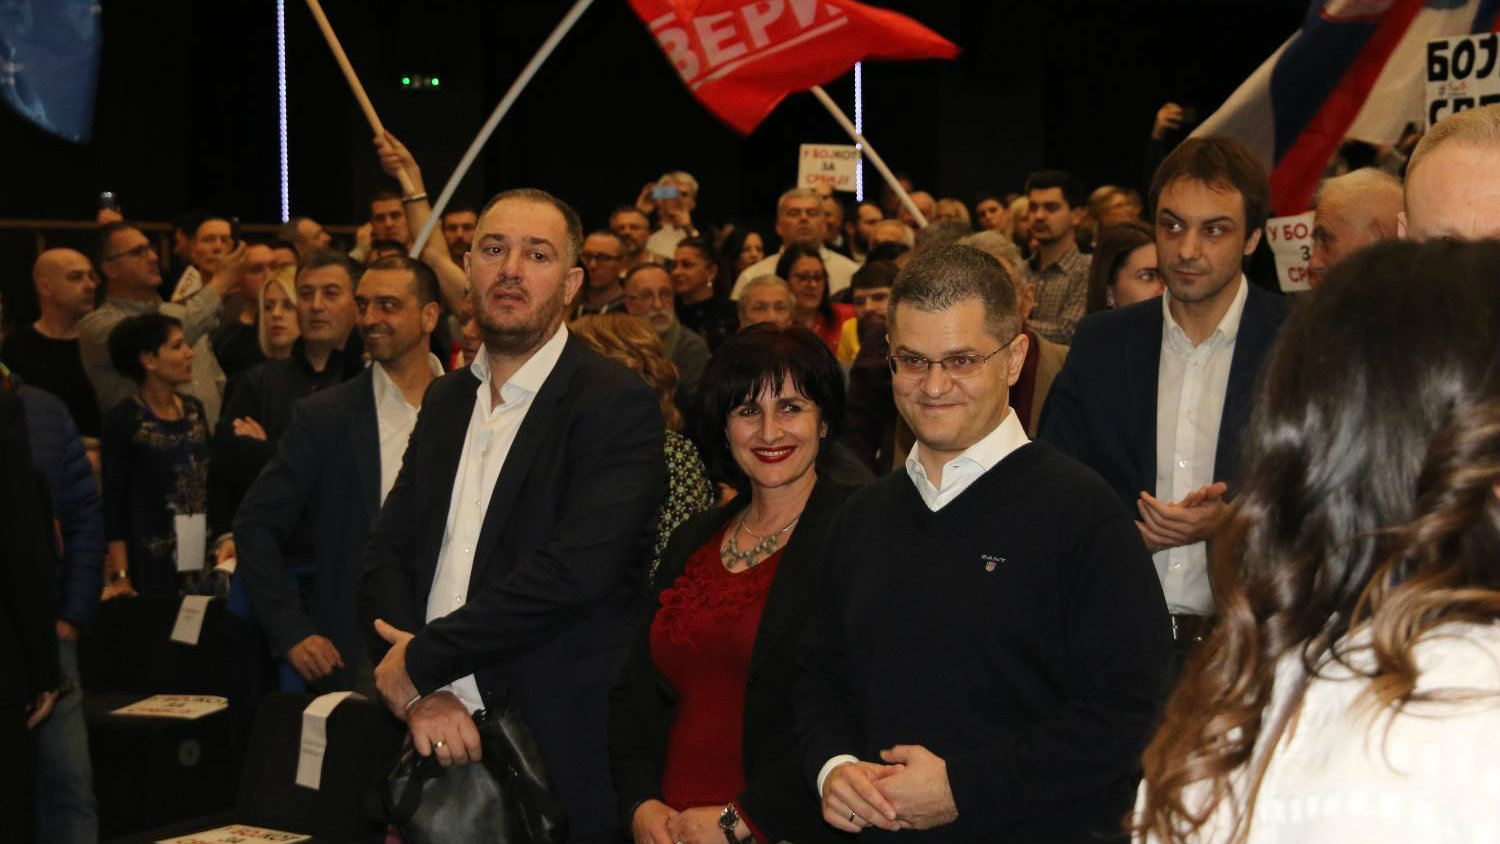 Opozicija počela kampanju bojkota izbora, Đilas kaže da su "poslušali svoj narod" 3